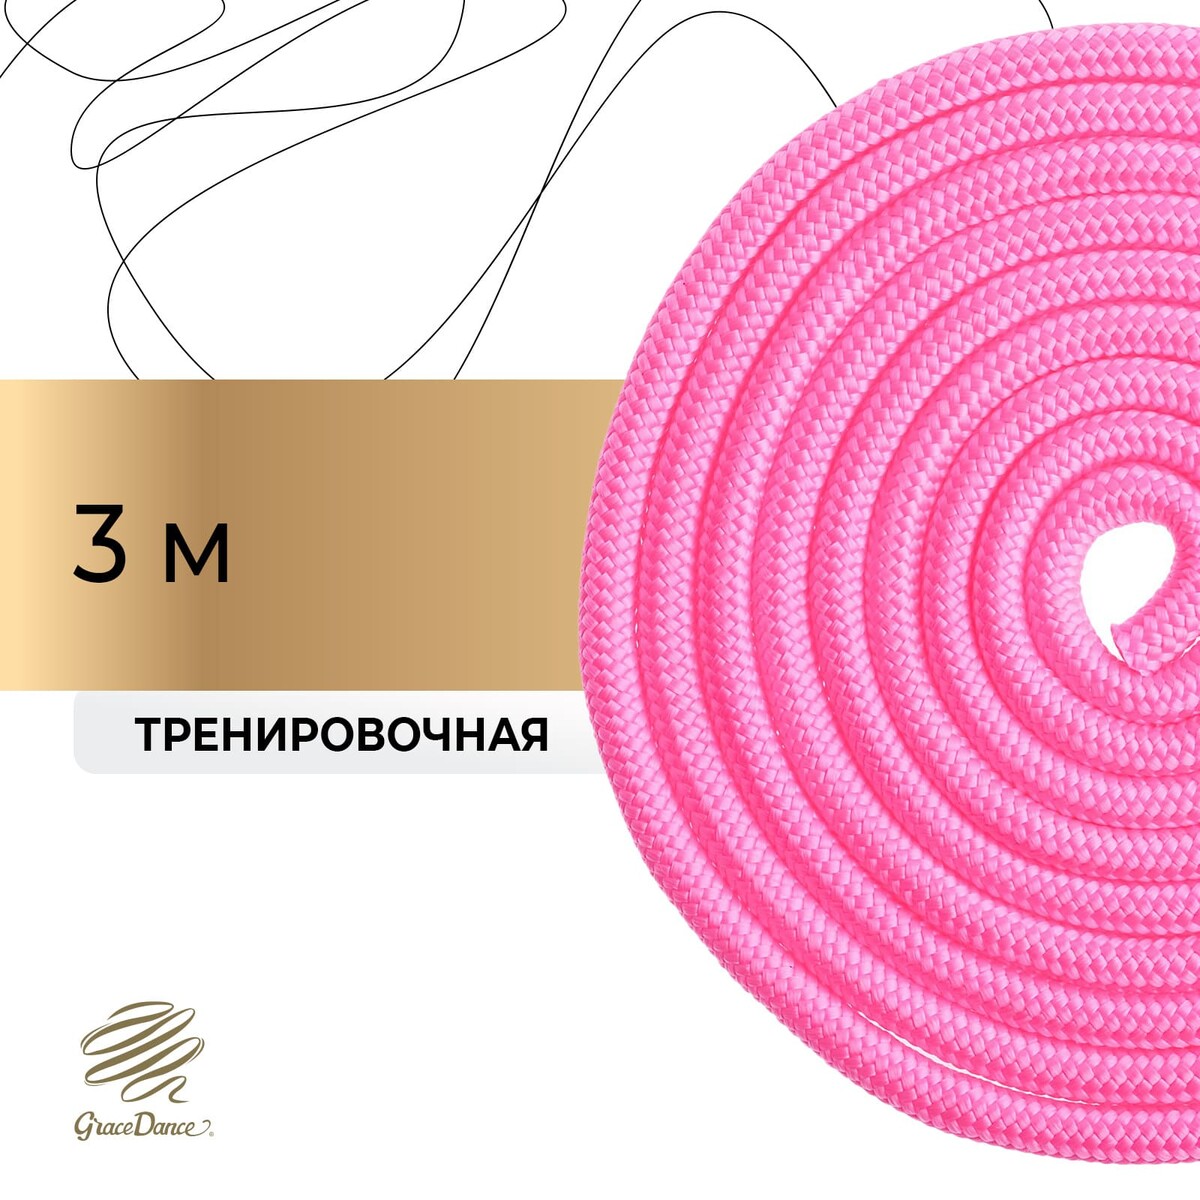 Скакалка для художественной гимнастики grace dance, 3 м, цвет розовый скакалка гимнастическая с люрексом body form bf sk04 bf jrgl01 3м 180гр розовый